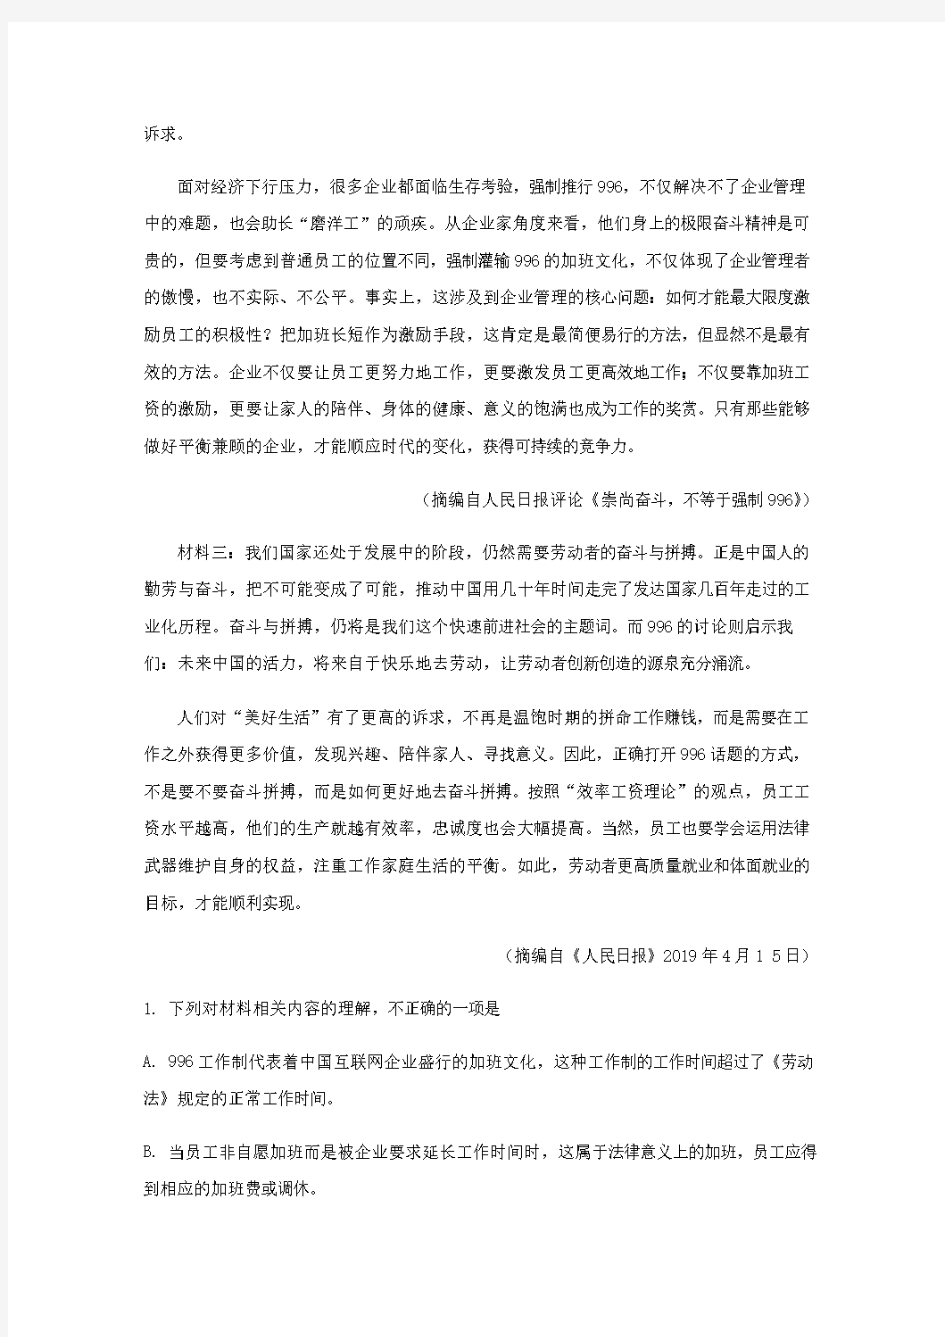  2019年重庆一中高2021级高二上期期中考试【含解析】